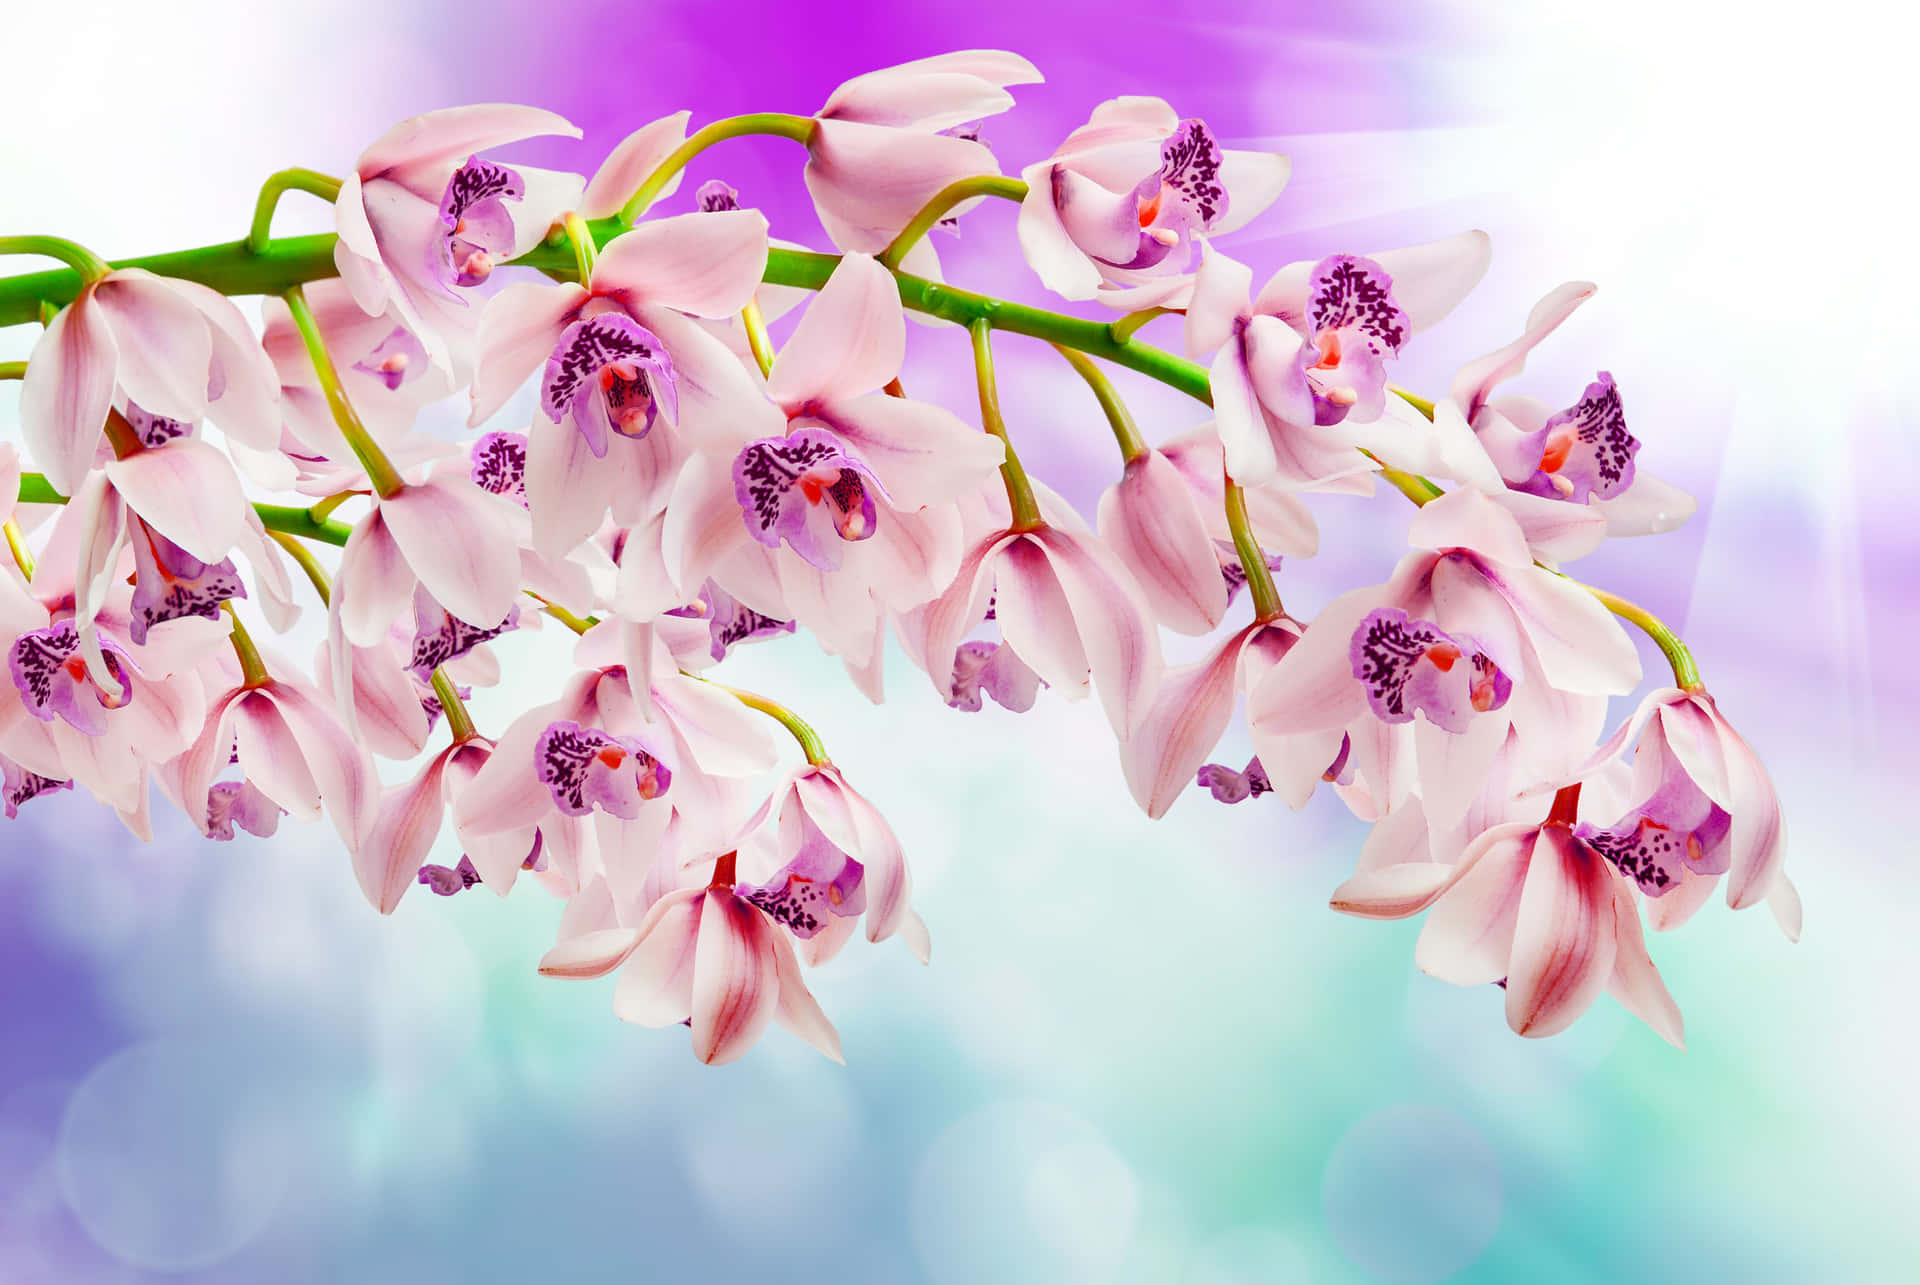 Labellezza Delle Orchidee Bianche E Viola